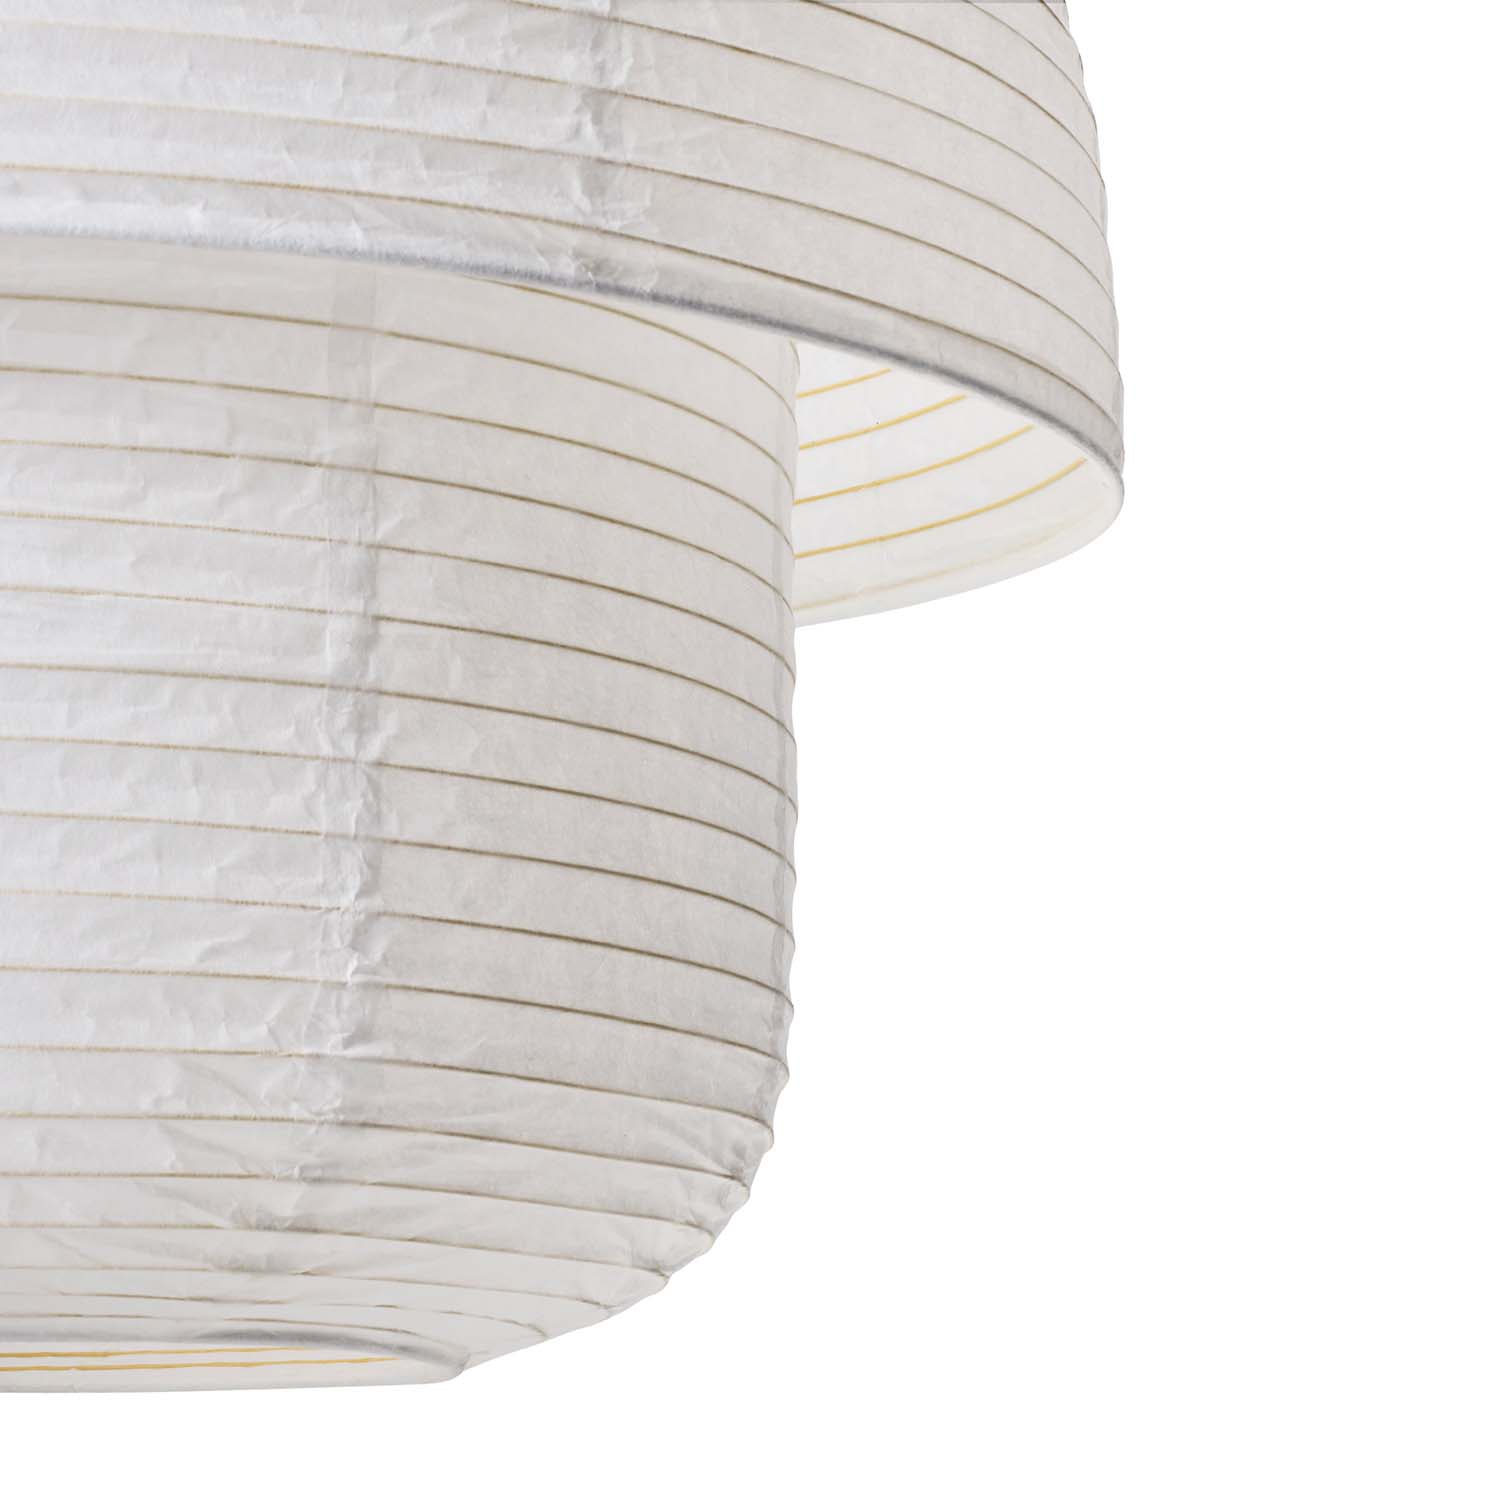 PAPIER Double - White paper hat chandelier for zen bedroom